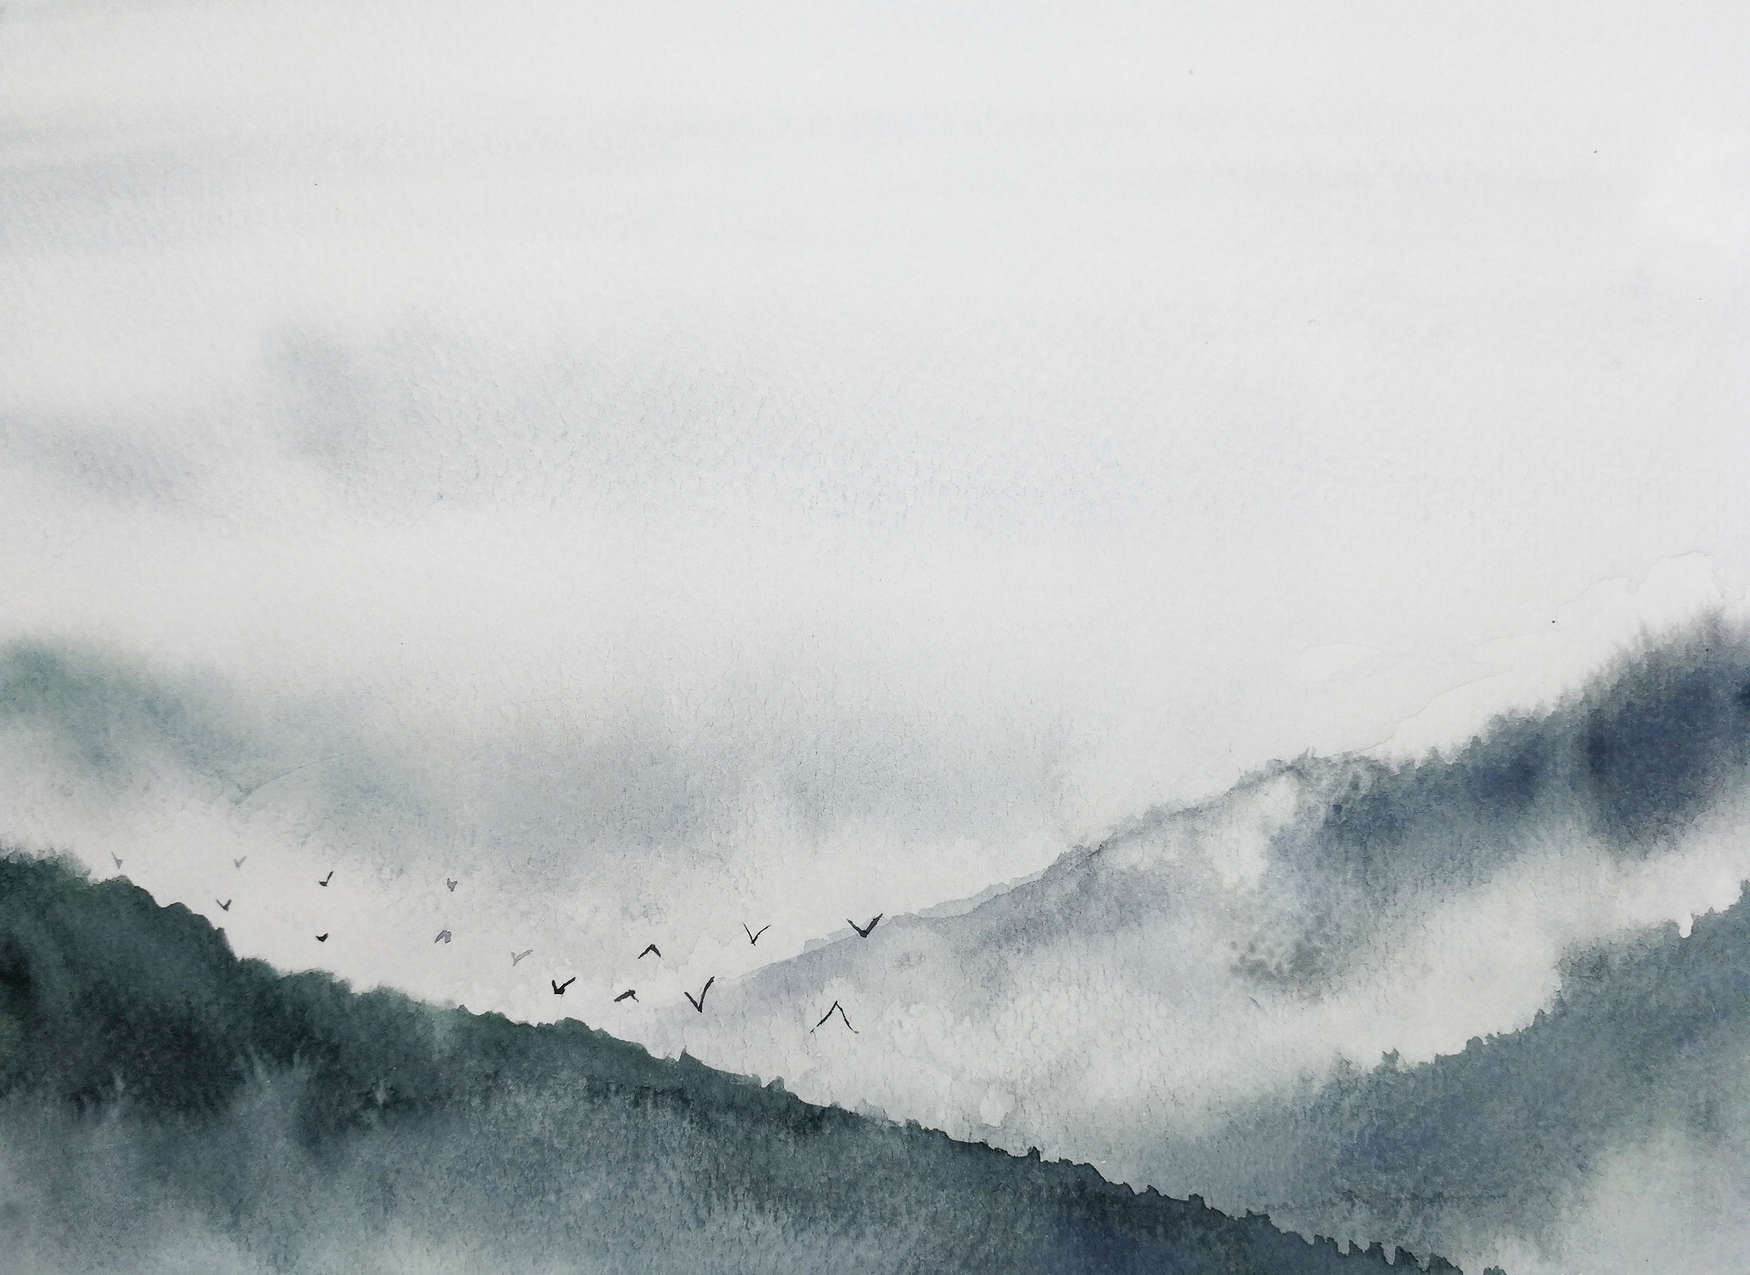             Nebelige Landschaft im Gemälde-Stil – Grau, Schwarz
        